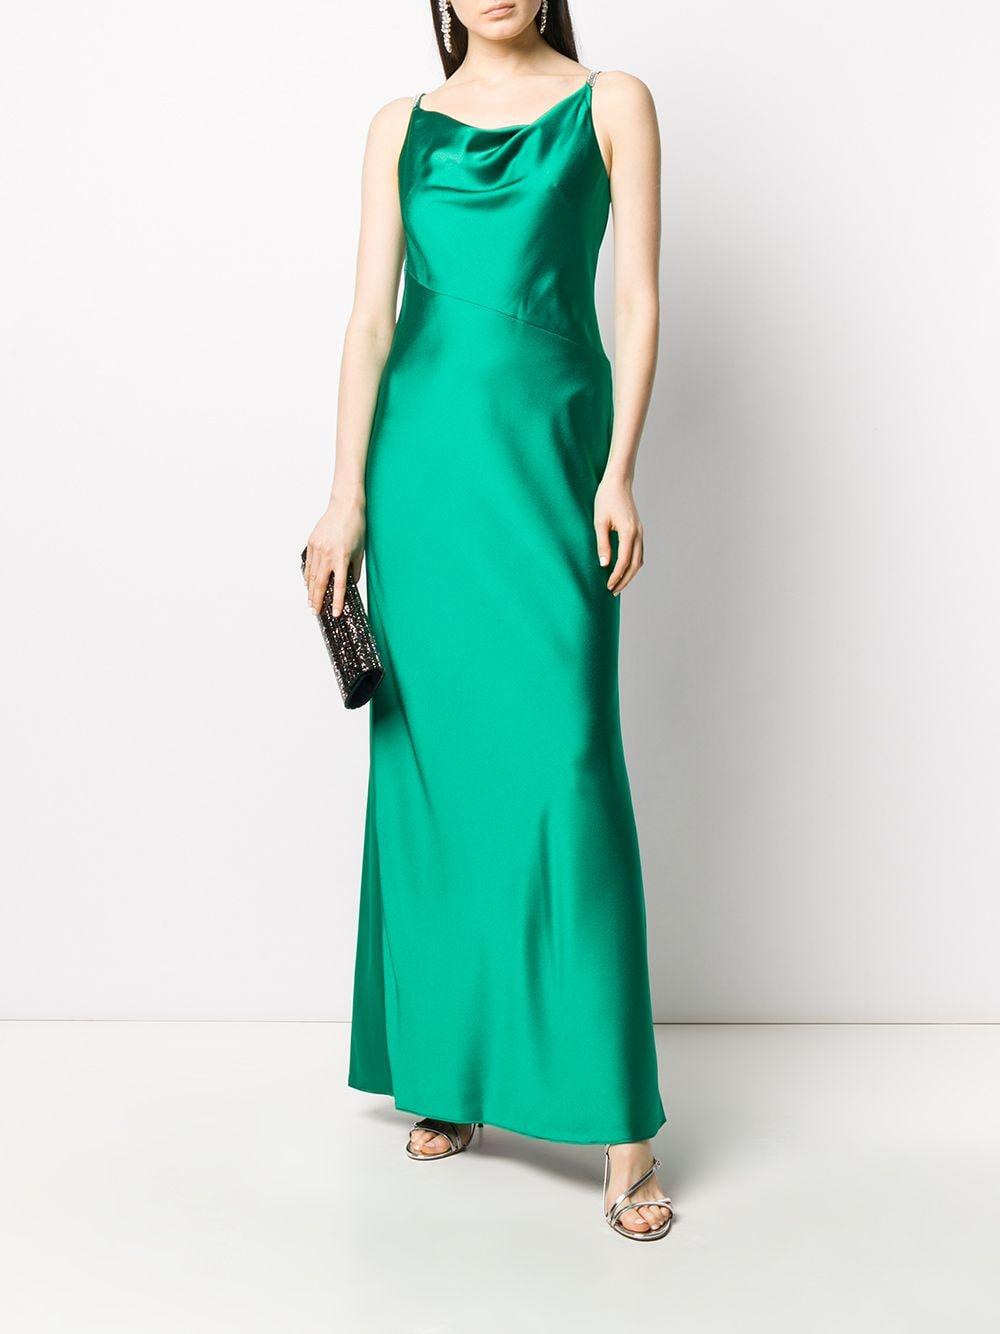 Lauren by Ralph Lauren Bonnie Satin Slip Dress in Green - Lyst